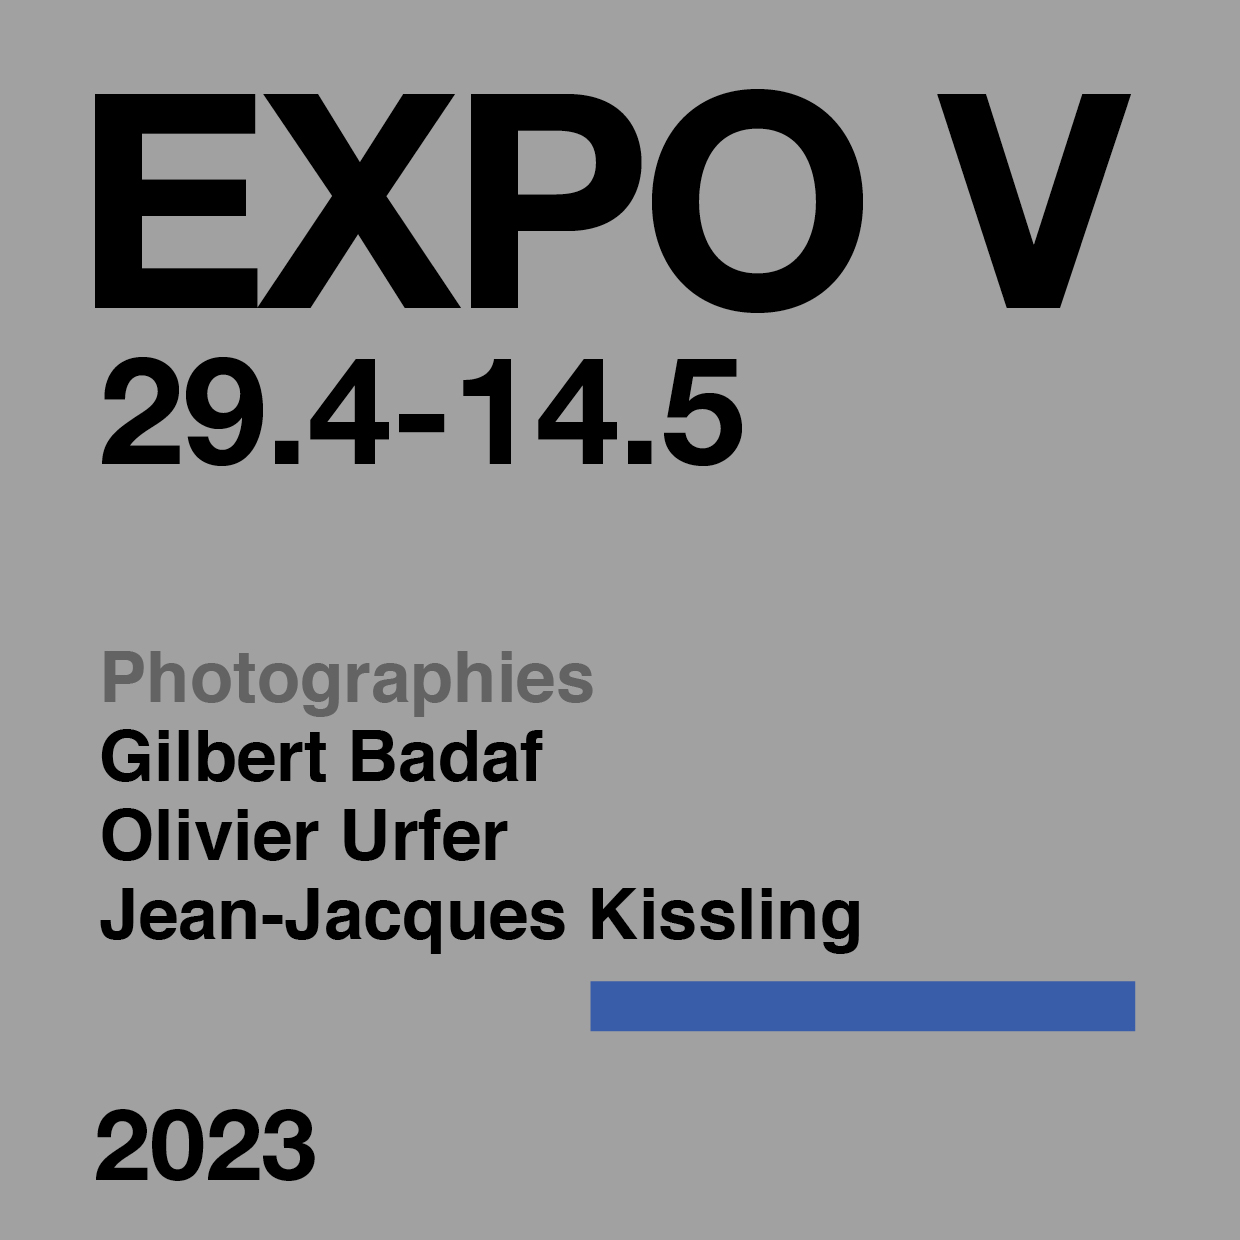 EXPO V 2023